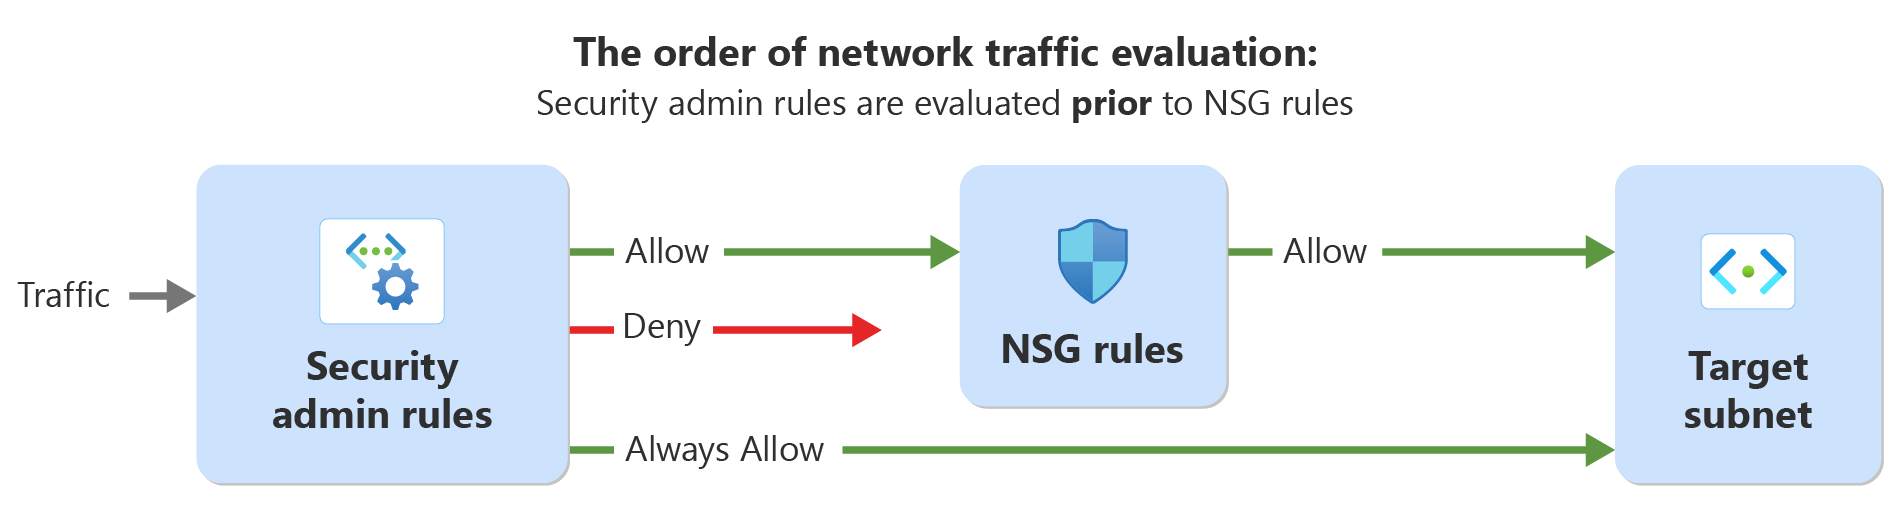 Diagrama mostrando a ordem de avaliação do tráfego de rede com regras de administrador de segurança e regras de segurança de rede.